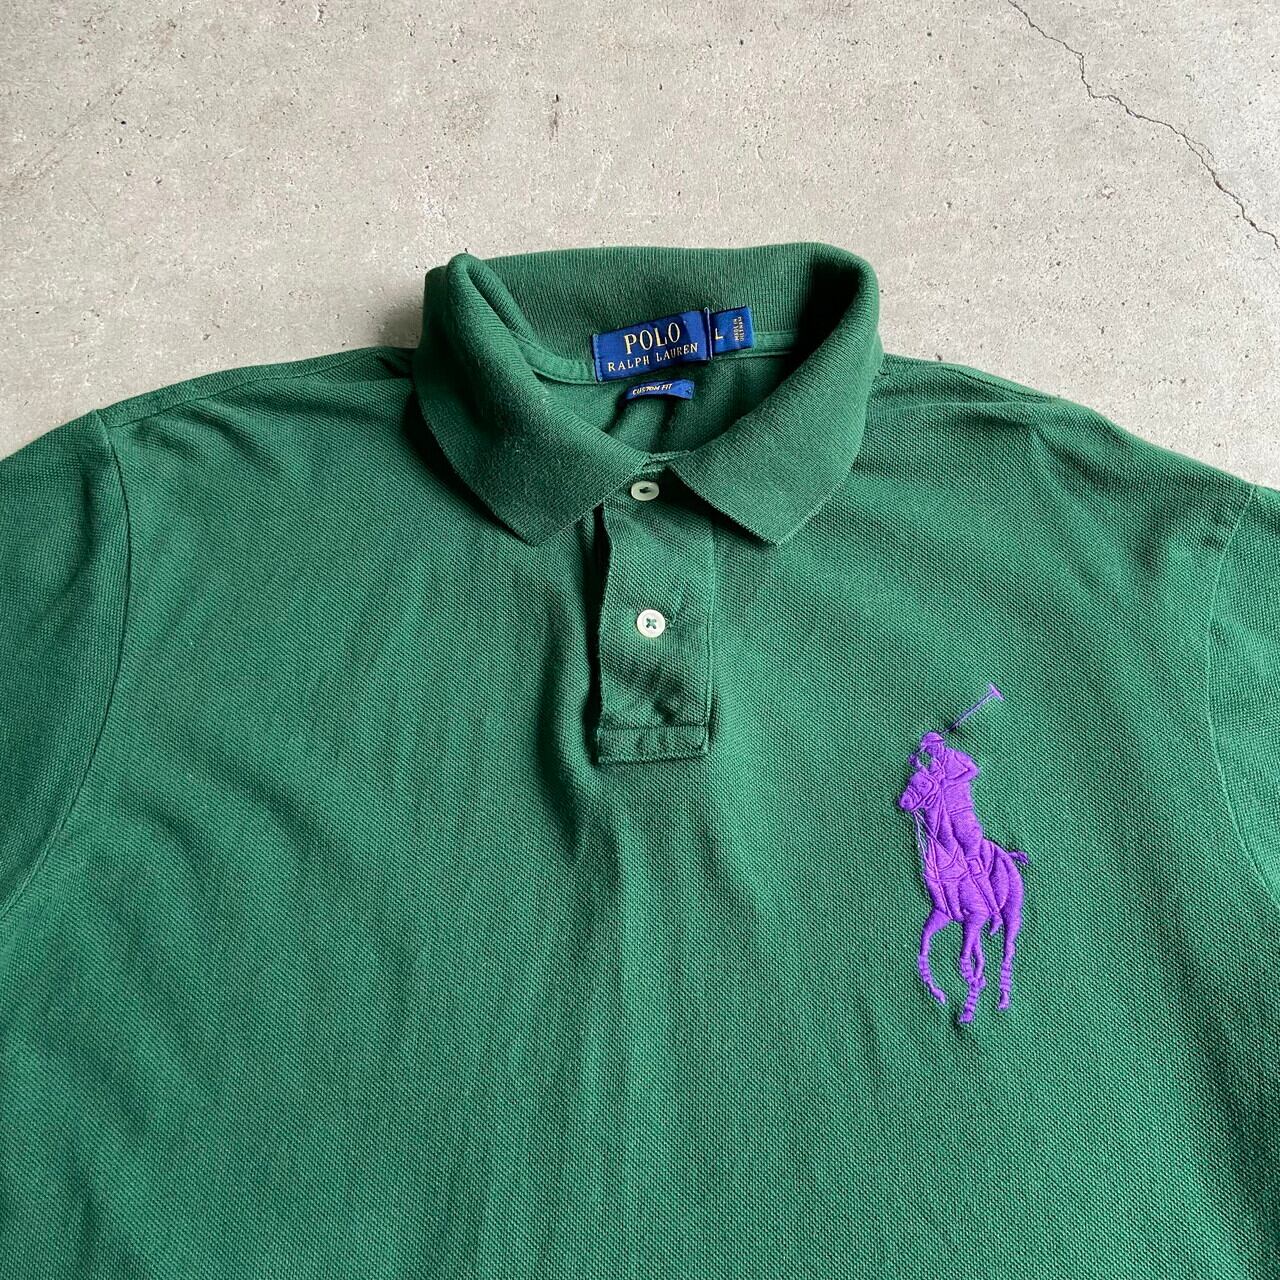 Polo Ralph Lauren ポロラルフローレン ビッグポニー 鹿の子 ポロシャツ メンズL 古着 ワンポイントロゴ刺? グリーン 緑色